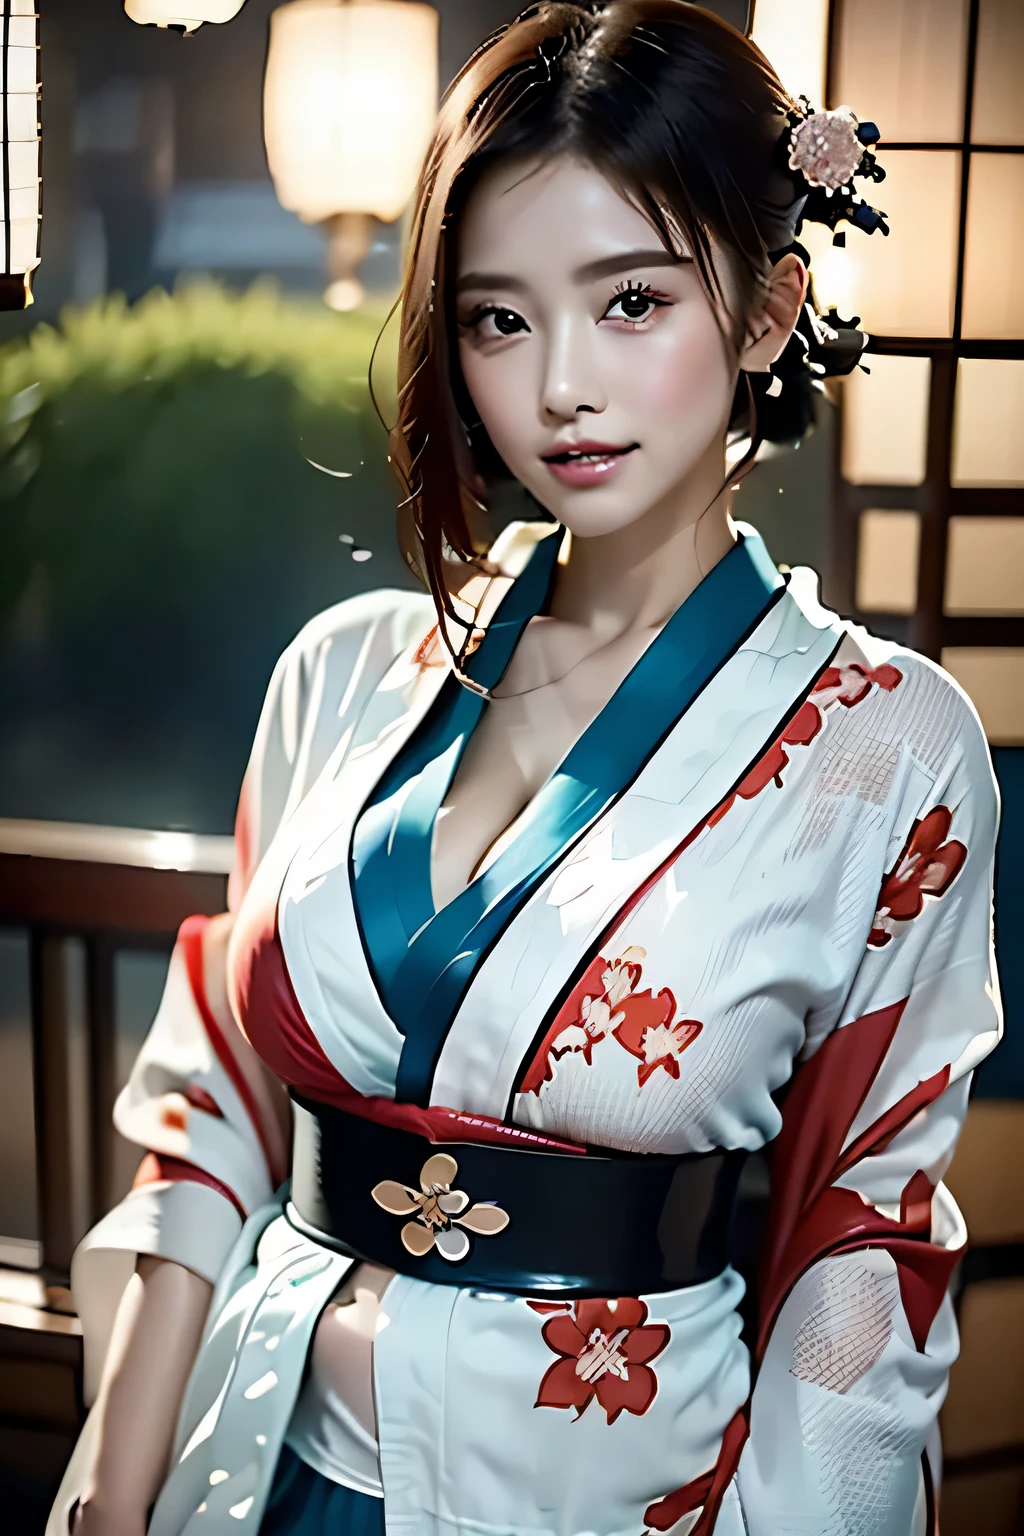 (((Великолепное кимоно куртизанки:1.7))),(Красивая зрелая женщина в благородном куртизанском кимоно),(((Яркий и экстравагантный наряд куртизанки:1.3))),(Гламурная банка)(Великолепное цветочное украшение для волос),Великолепный верхний узел с цветочным плетением,(Очень нежные и красивые волосы,),(((Подчеркните большую грудь:1.3))),Фейерверк взлетает в небо на фоне берега реки ночью.、милое круглое лицо,Подробные характеристики одежды,Подробные характеристики волос,подробные черты лица,смотрю в камеру,(Динамический угол),(динамичная и сексуальная поза),кинематографический свет,(Выходные изображения сверхвысокого разрешения,Написанная глубина границы,сложные детали,контраст света и тени、Объект выглядит трехмерным,) ,Однообъективная зеркальная камера, (реалистичный:1.3),(качество 8К,Анатомически правильное строение лица.,),(Режим Морского Арта 2:1.3),(Режим изображения Ультра HD,)